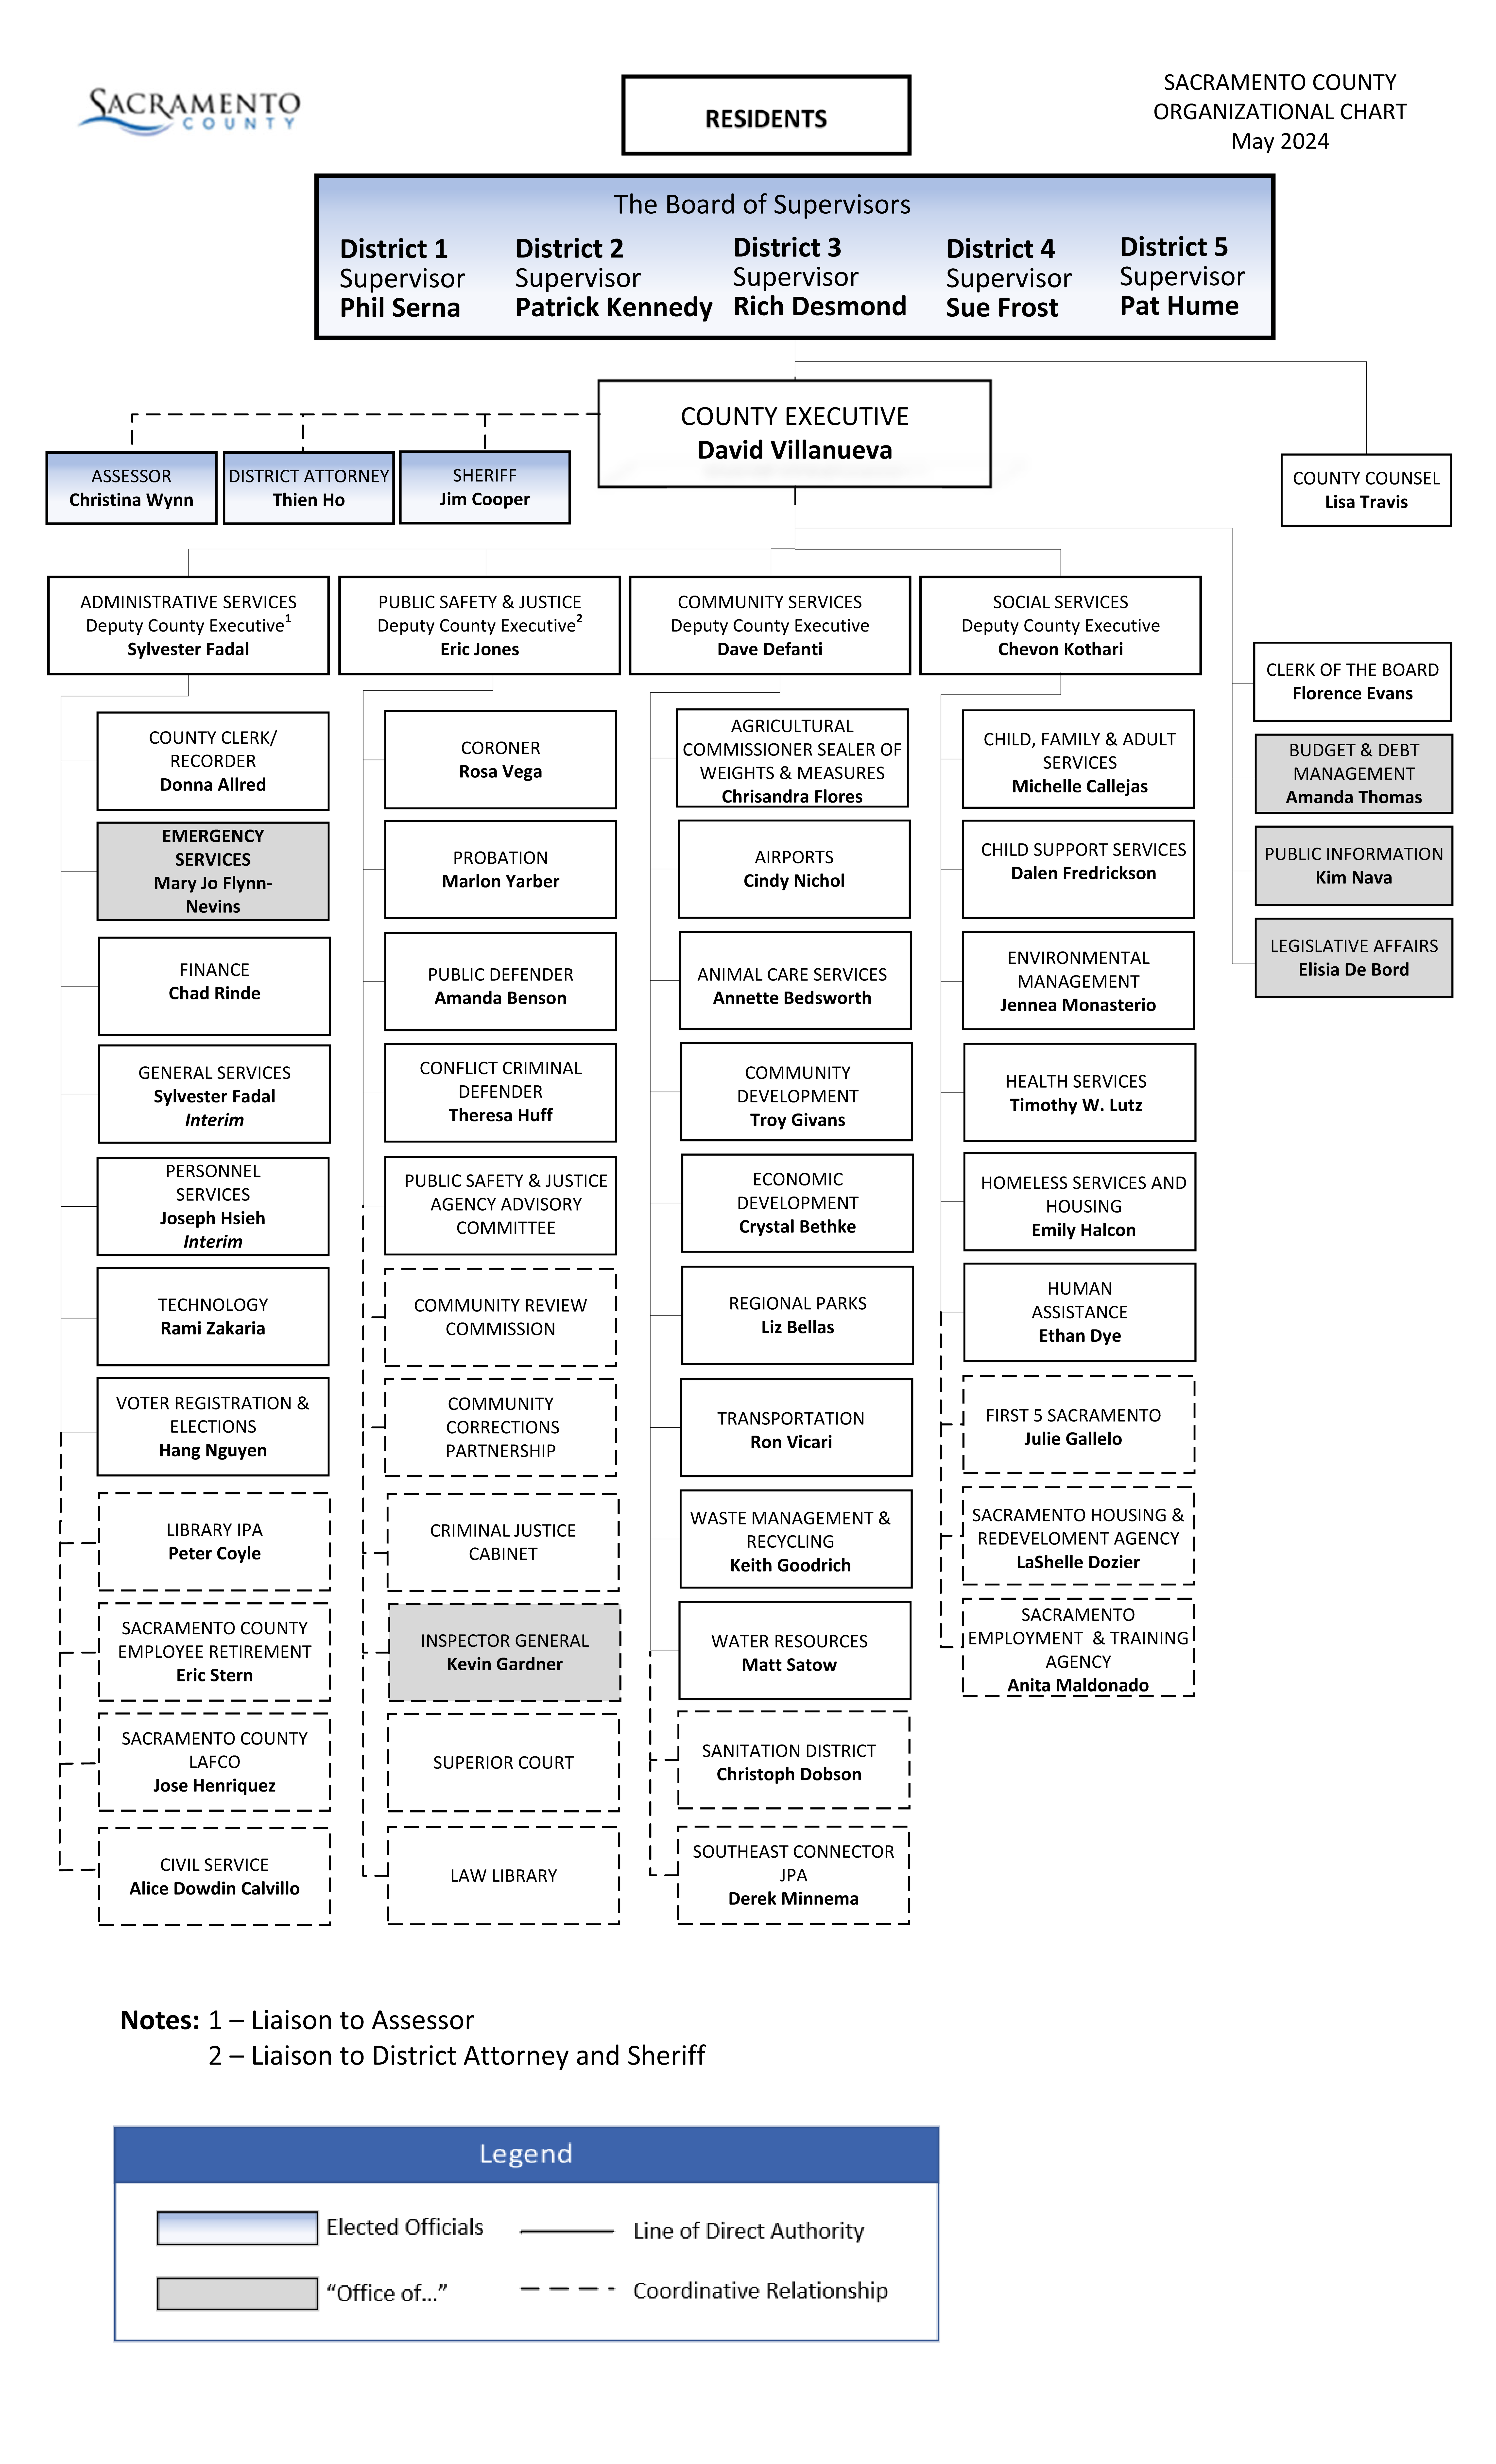 Hhs Organizational Chart Pdf